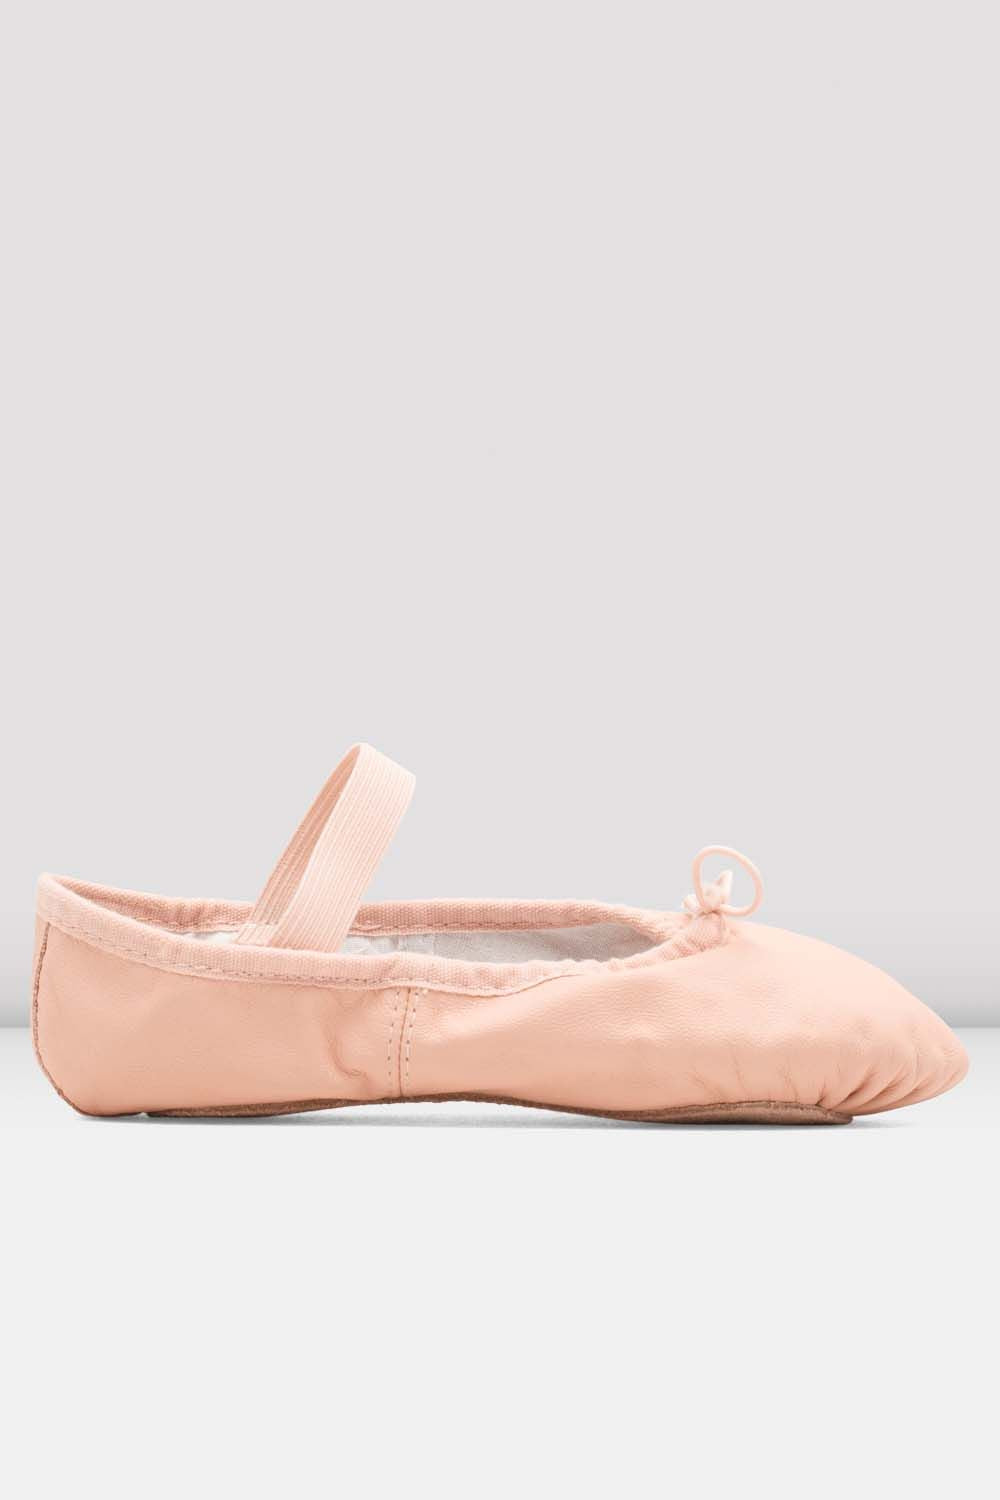 Bloch Dansoft Full Sole Ballet Shoe - Pink